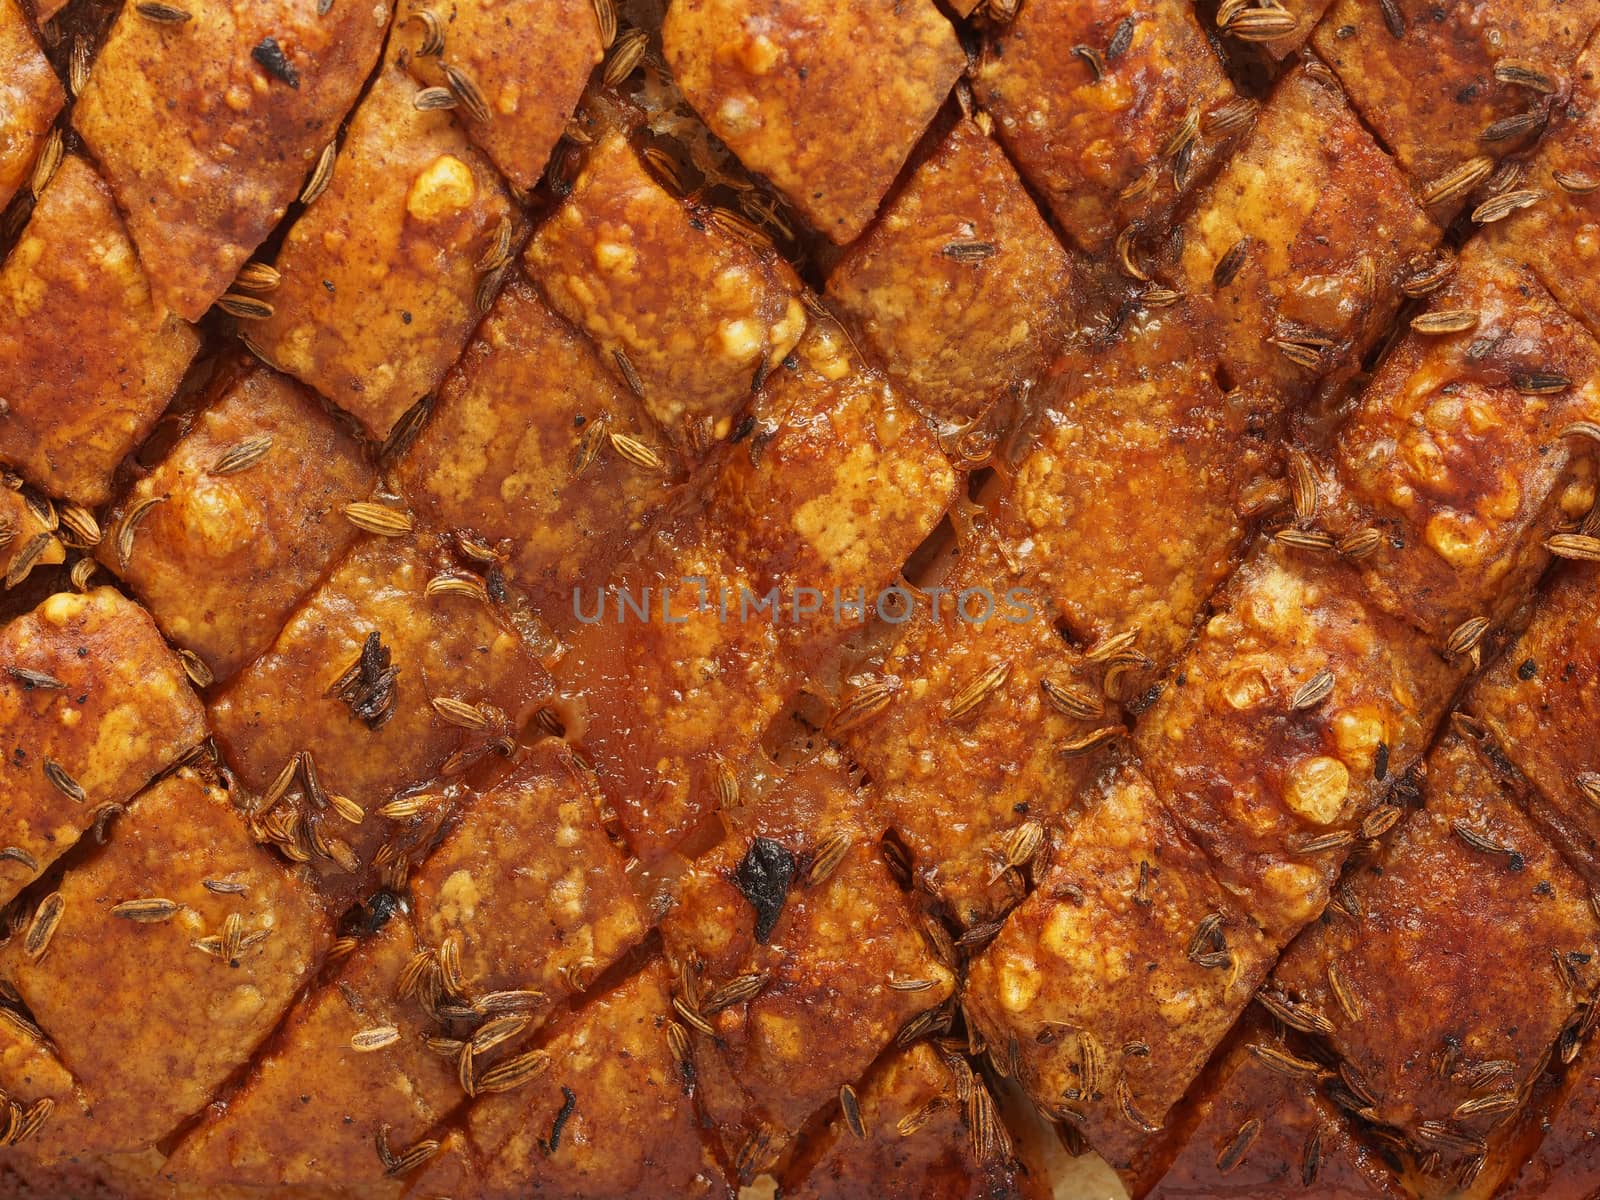 rustic scored golden roasted pork belly skin background by zkruger